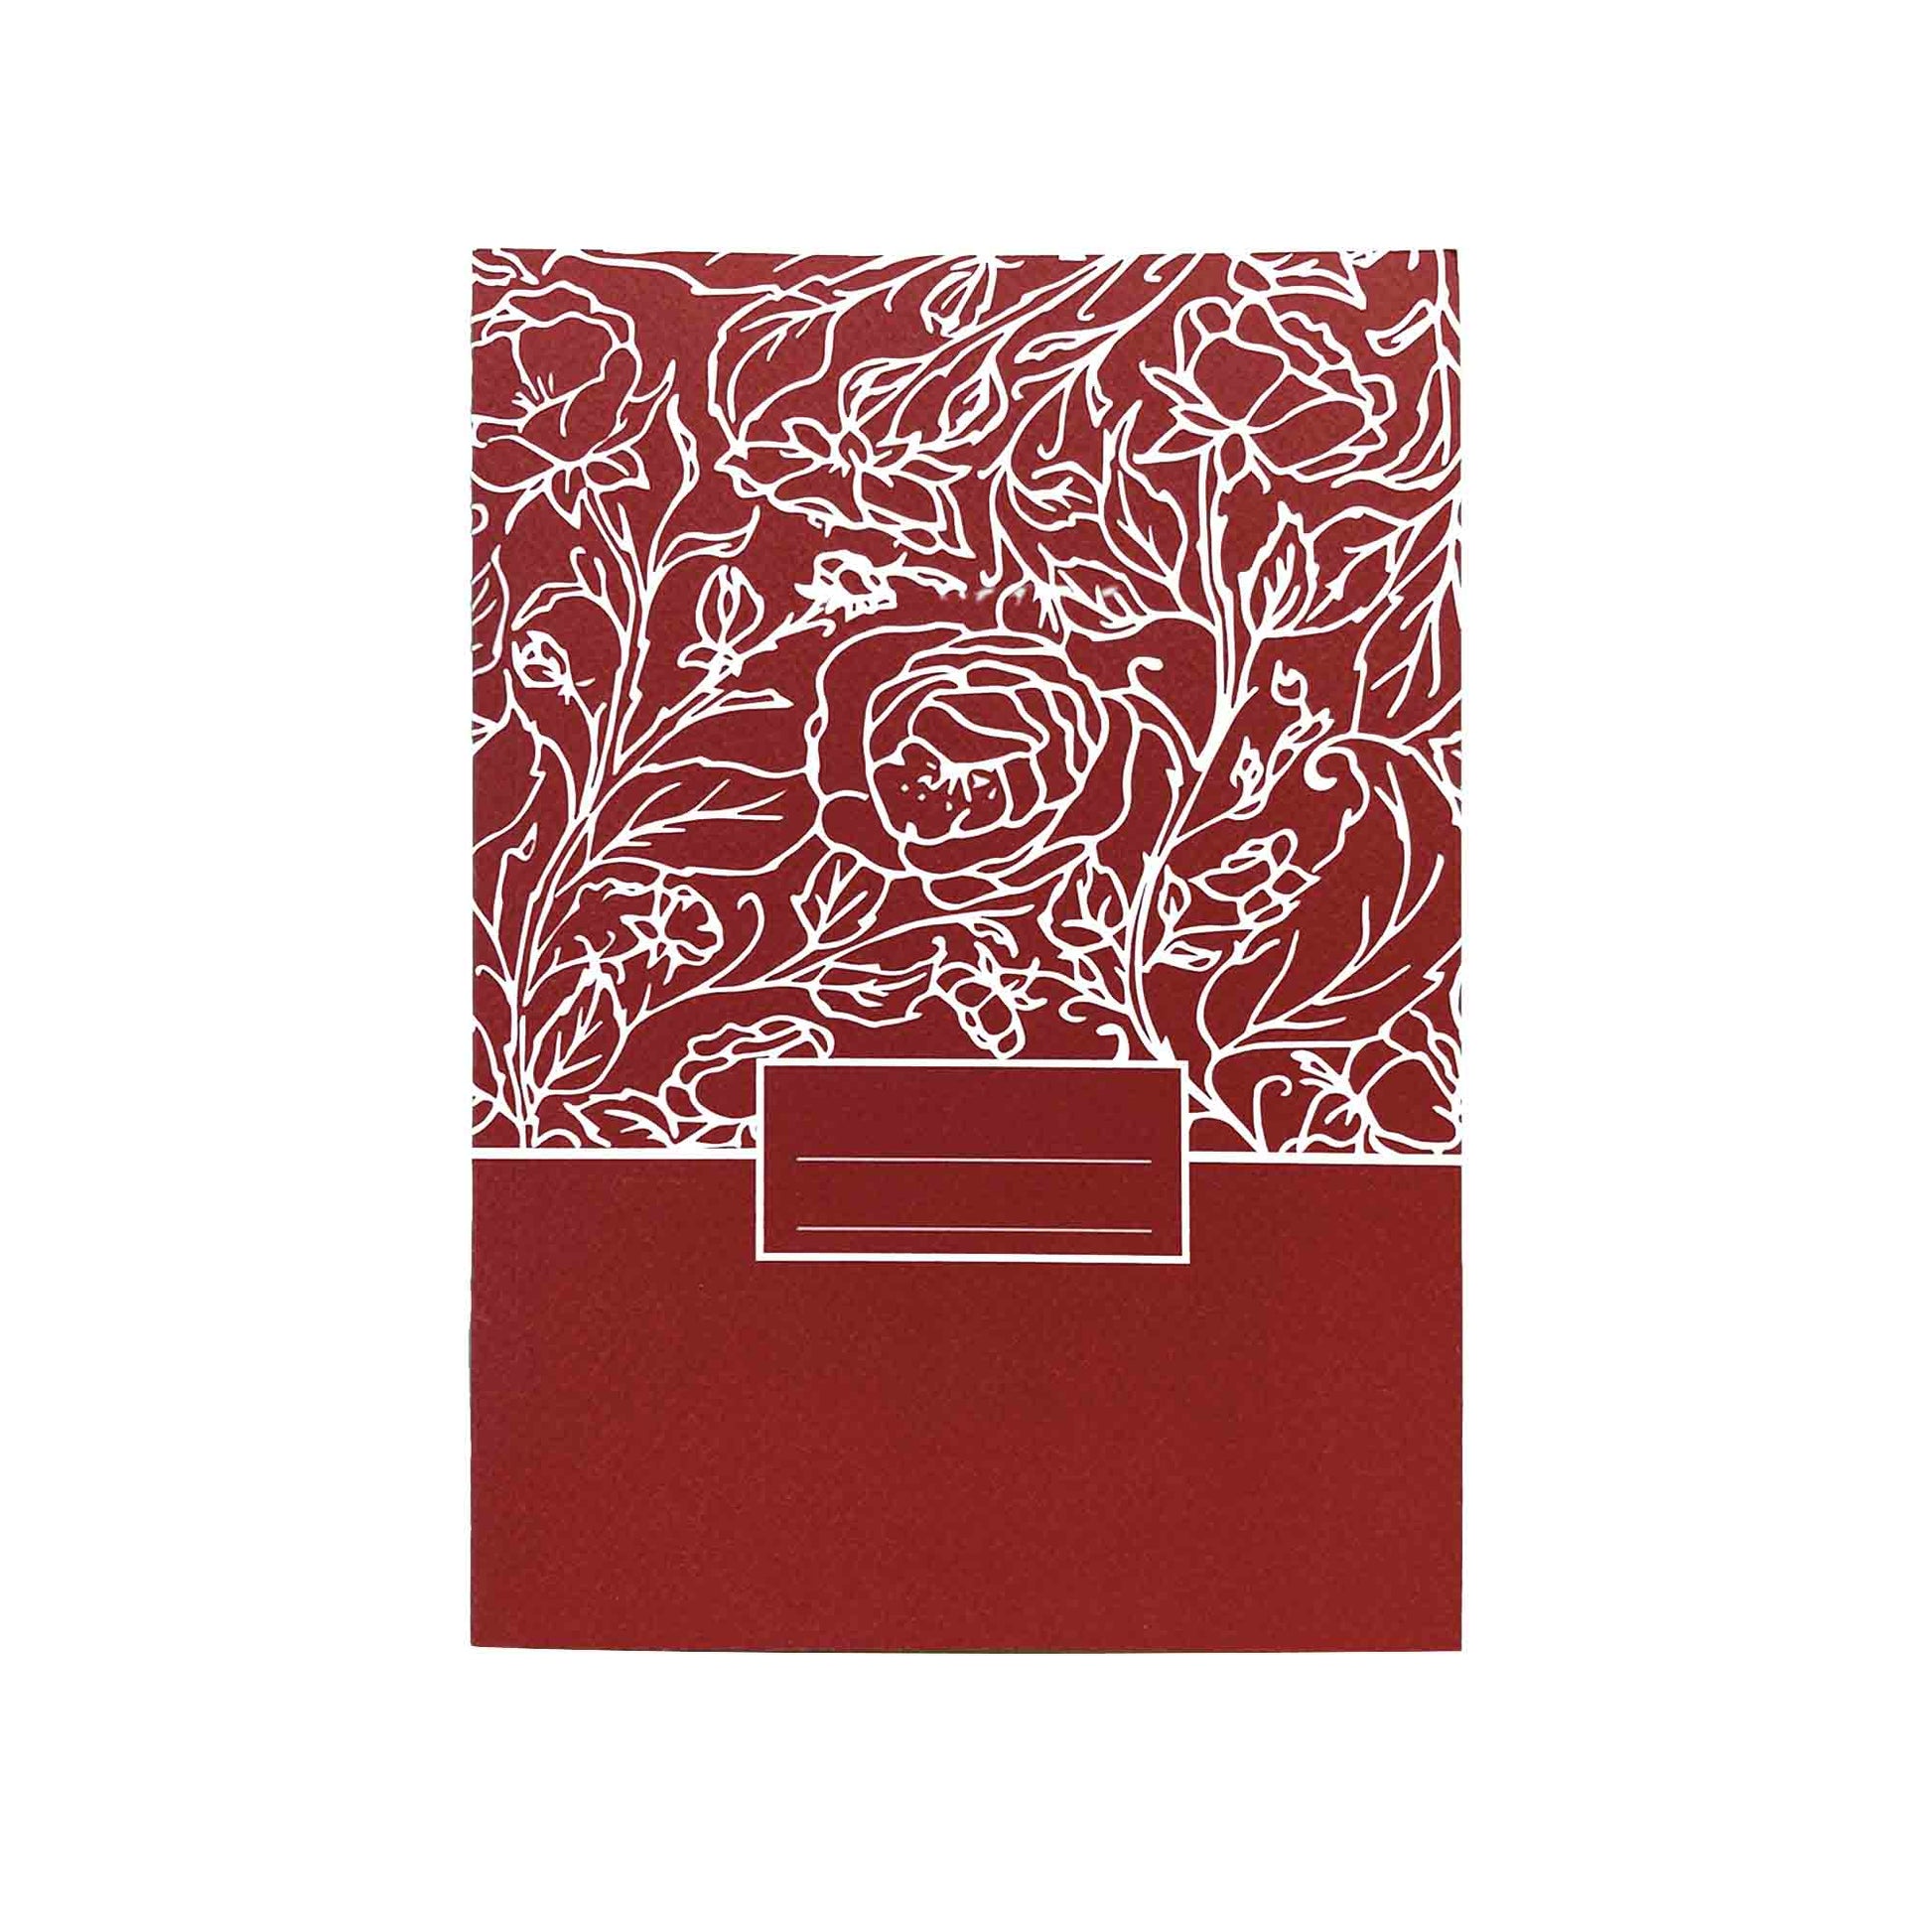 Carnet de Notes : Explosion de pastèque A5 blanc - 120 pages pour les gens  à la mode (rose fuchsia) (Paperback) 